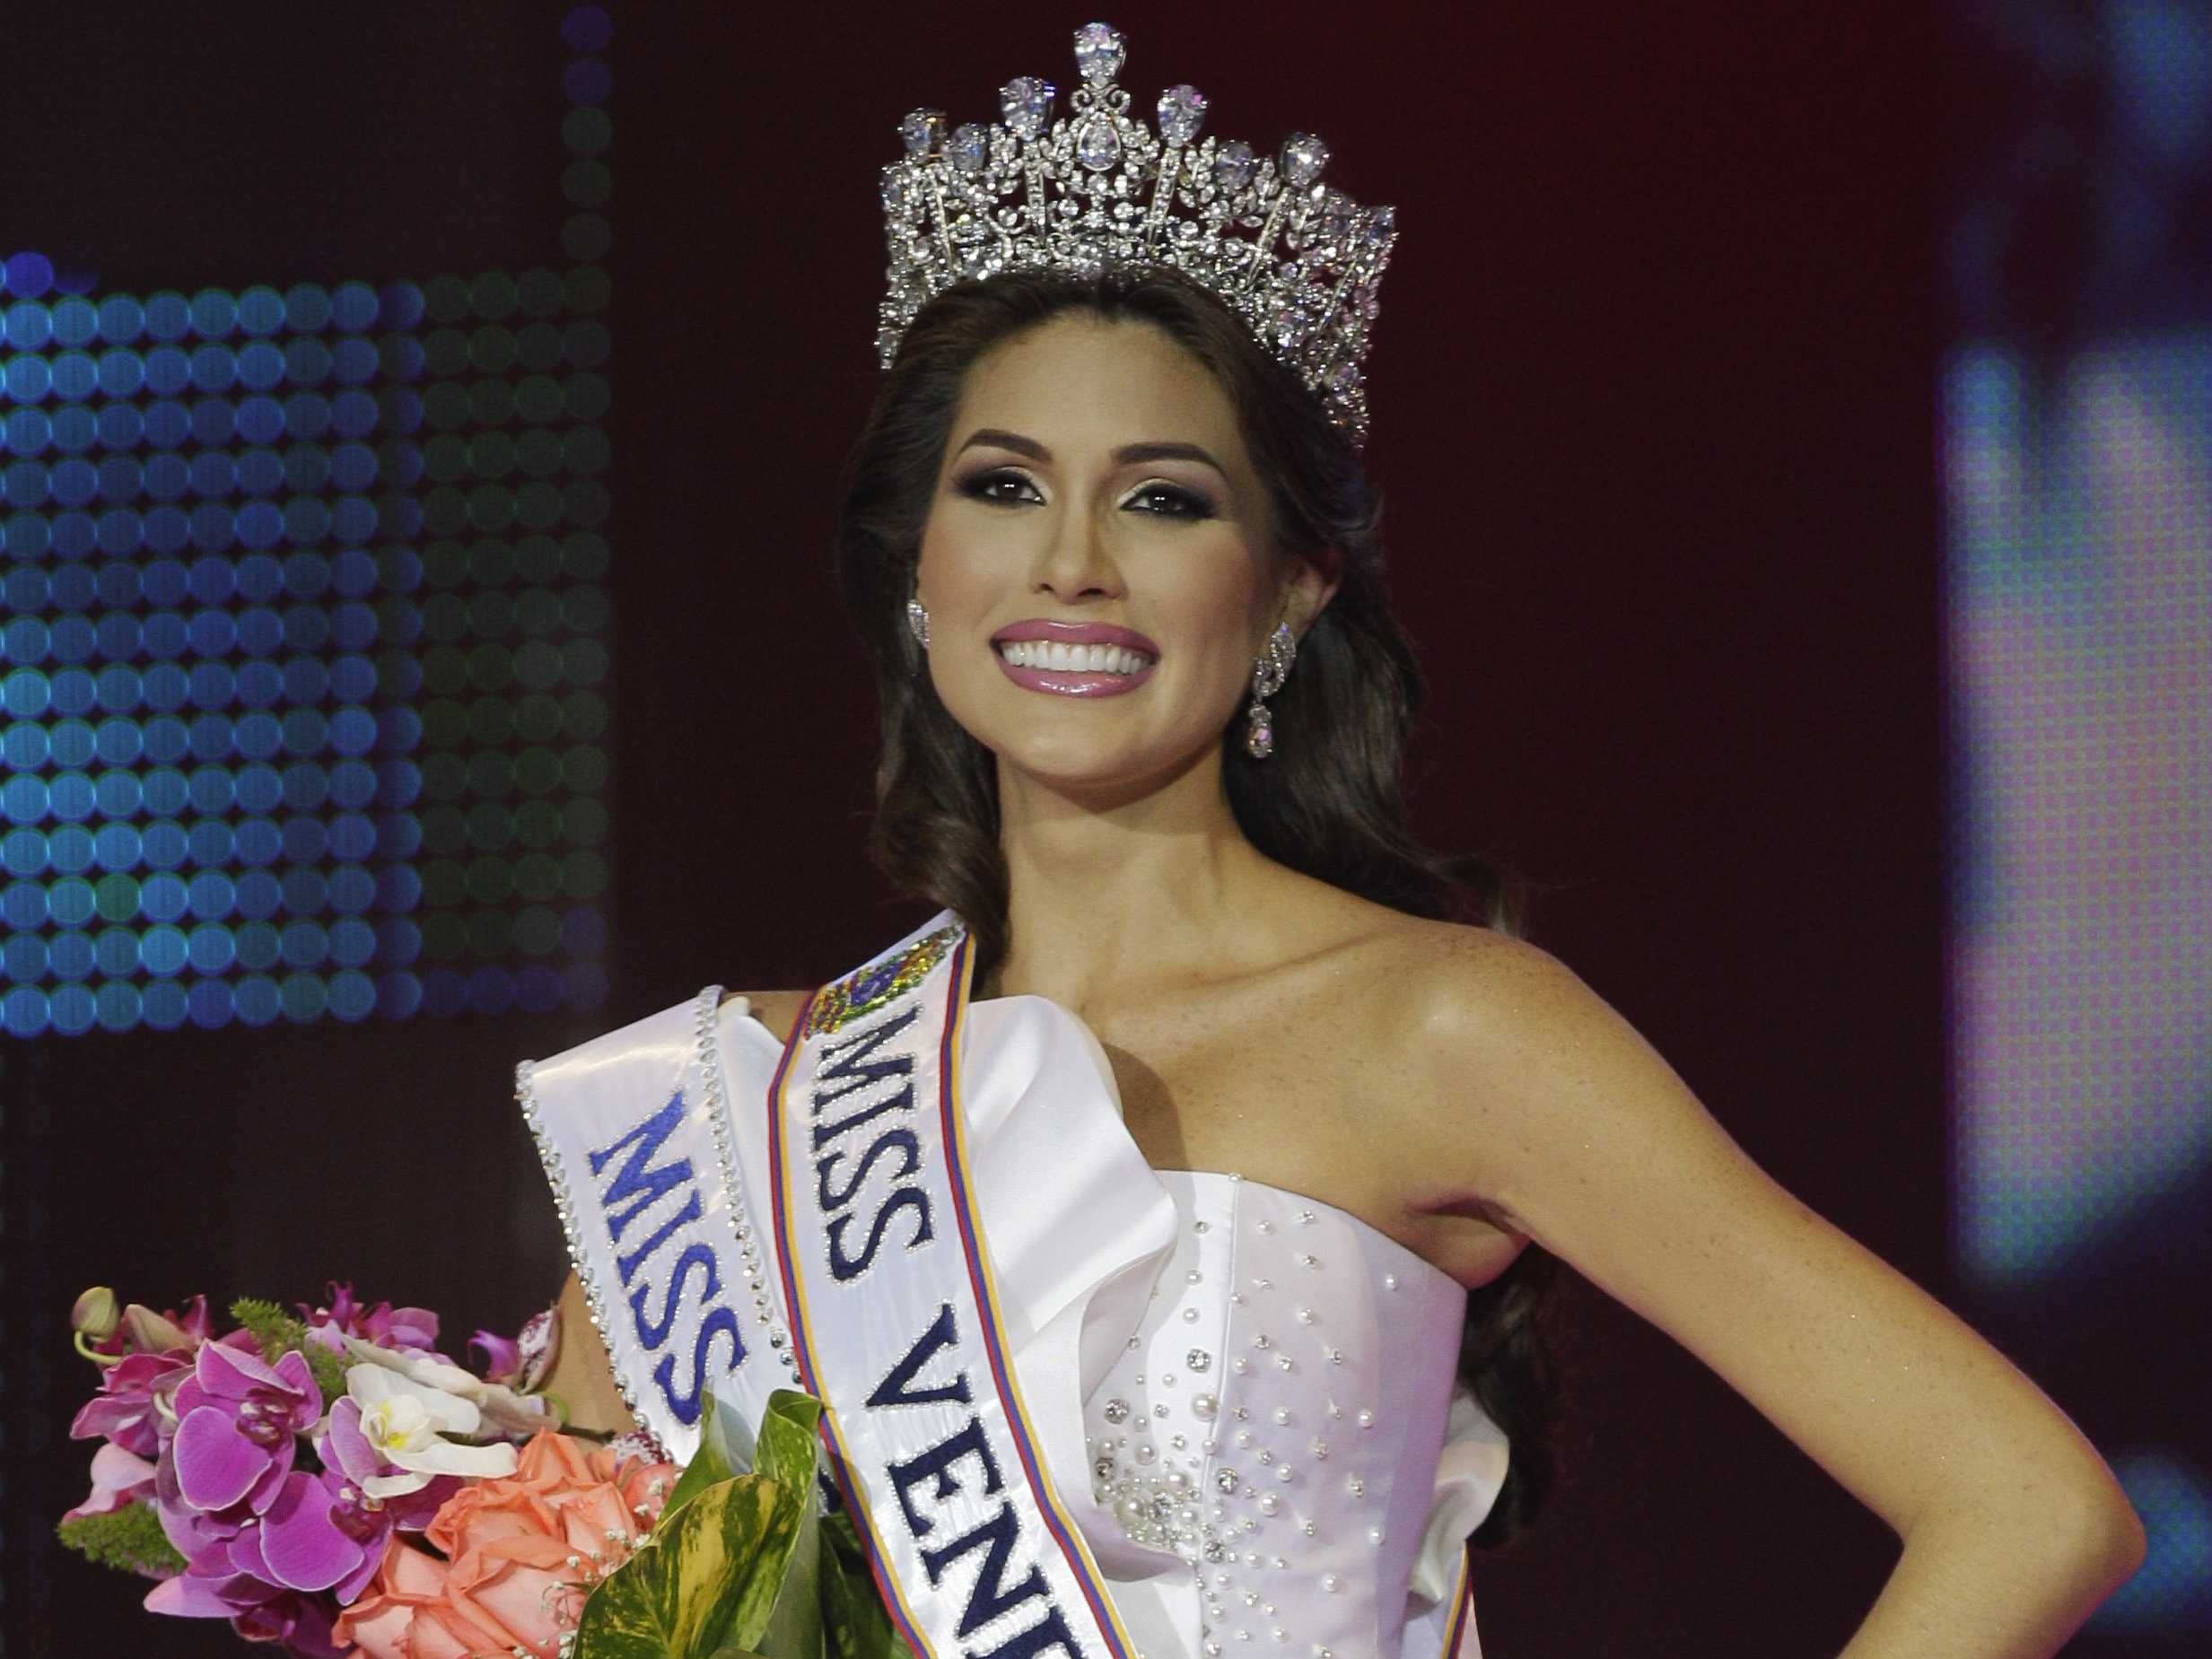 Estos son los momentos más insólitos del Miss Venezuela (Foto+TBT)